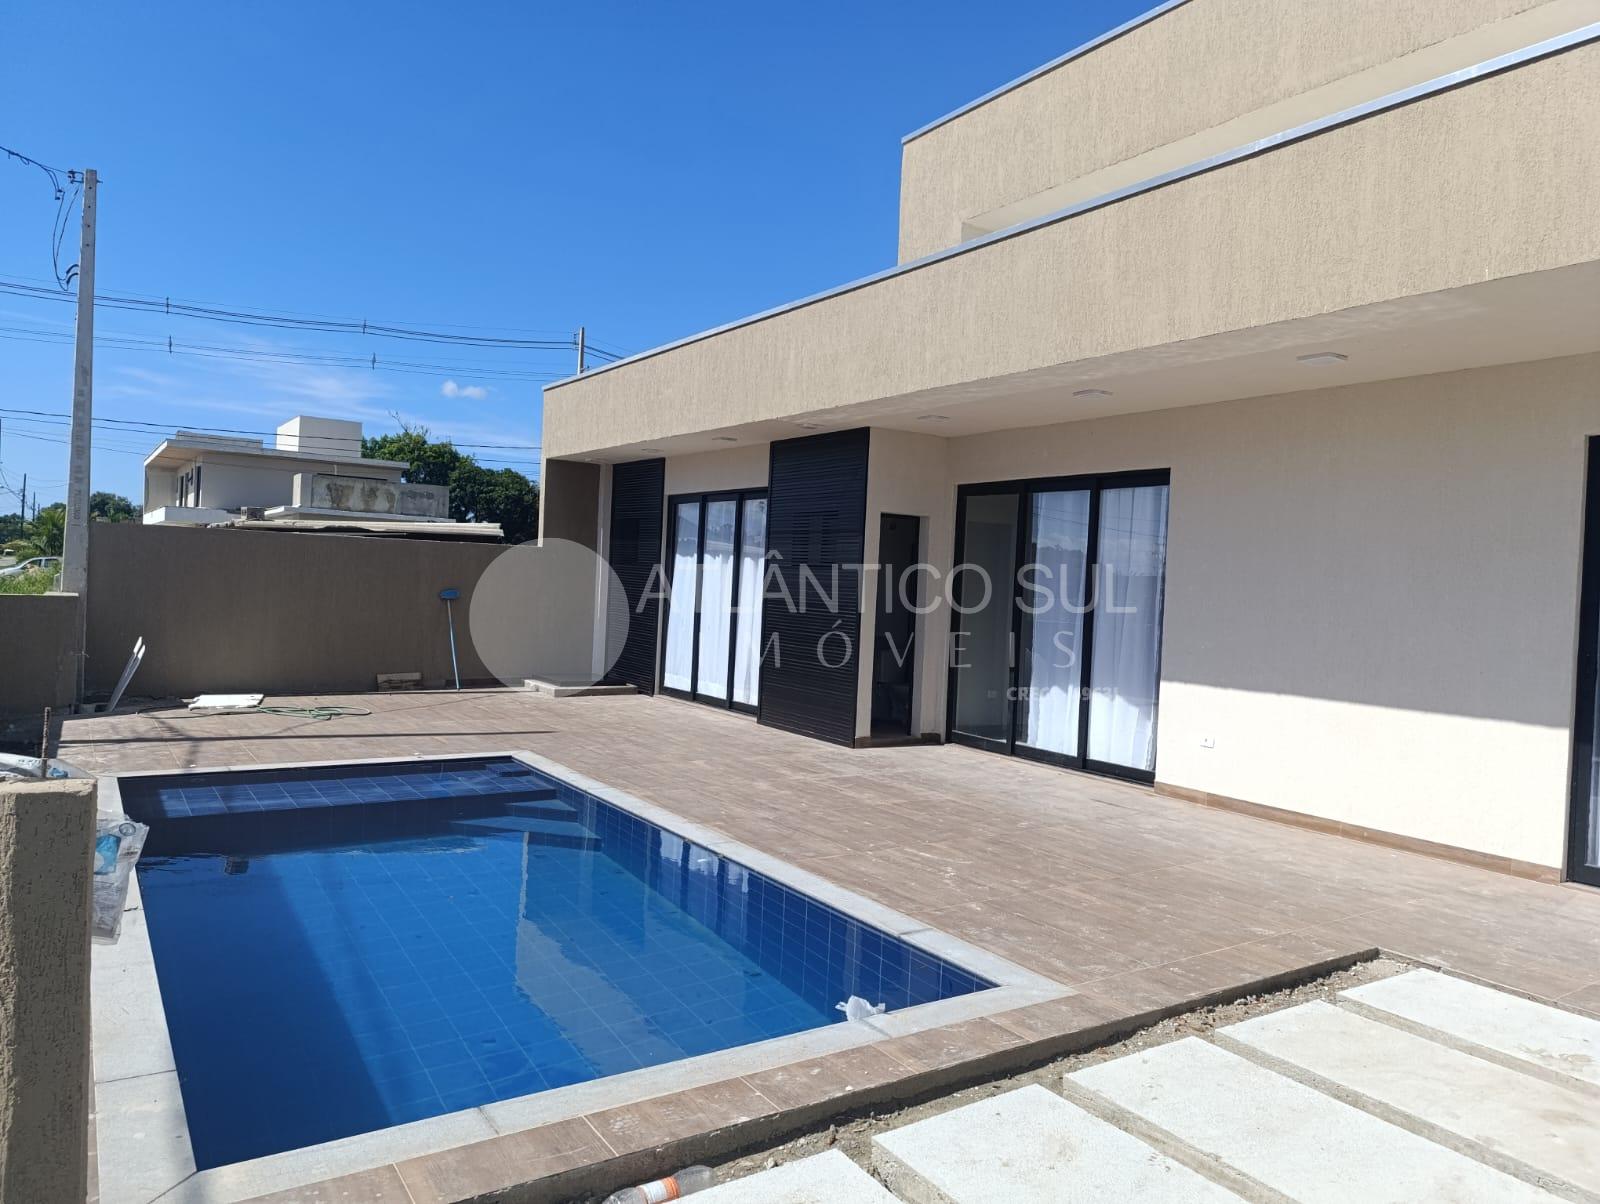 Casa com piscina 3 suites praia, ATAMI, PONTAL DO PARANA - PR